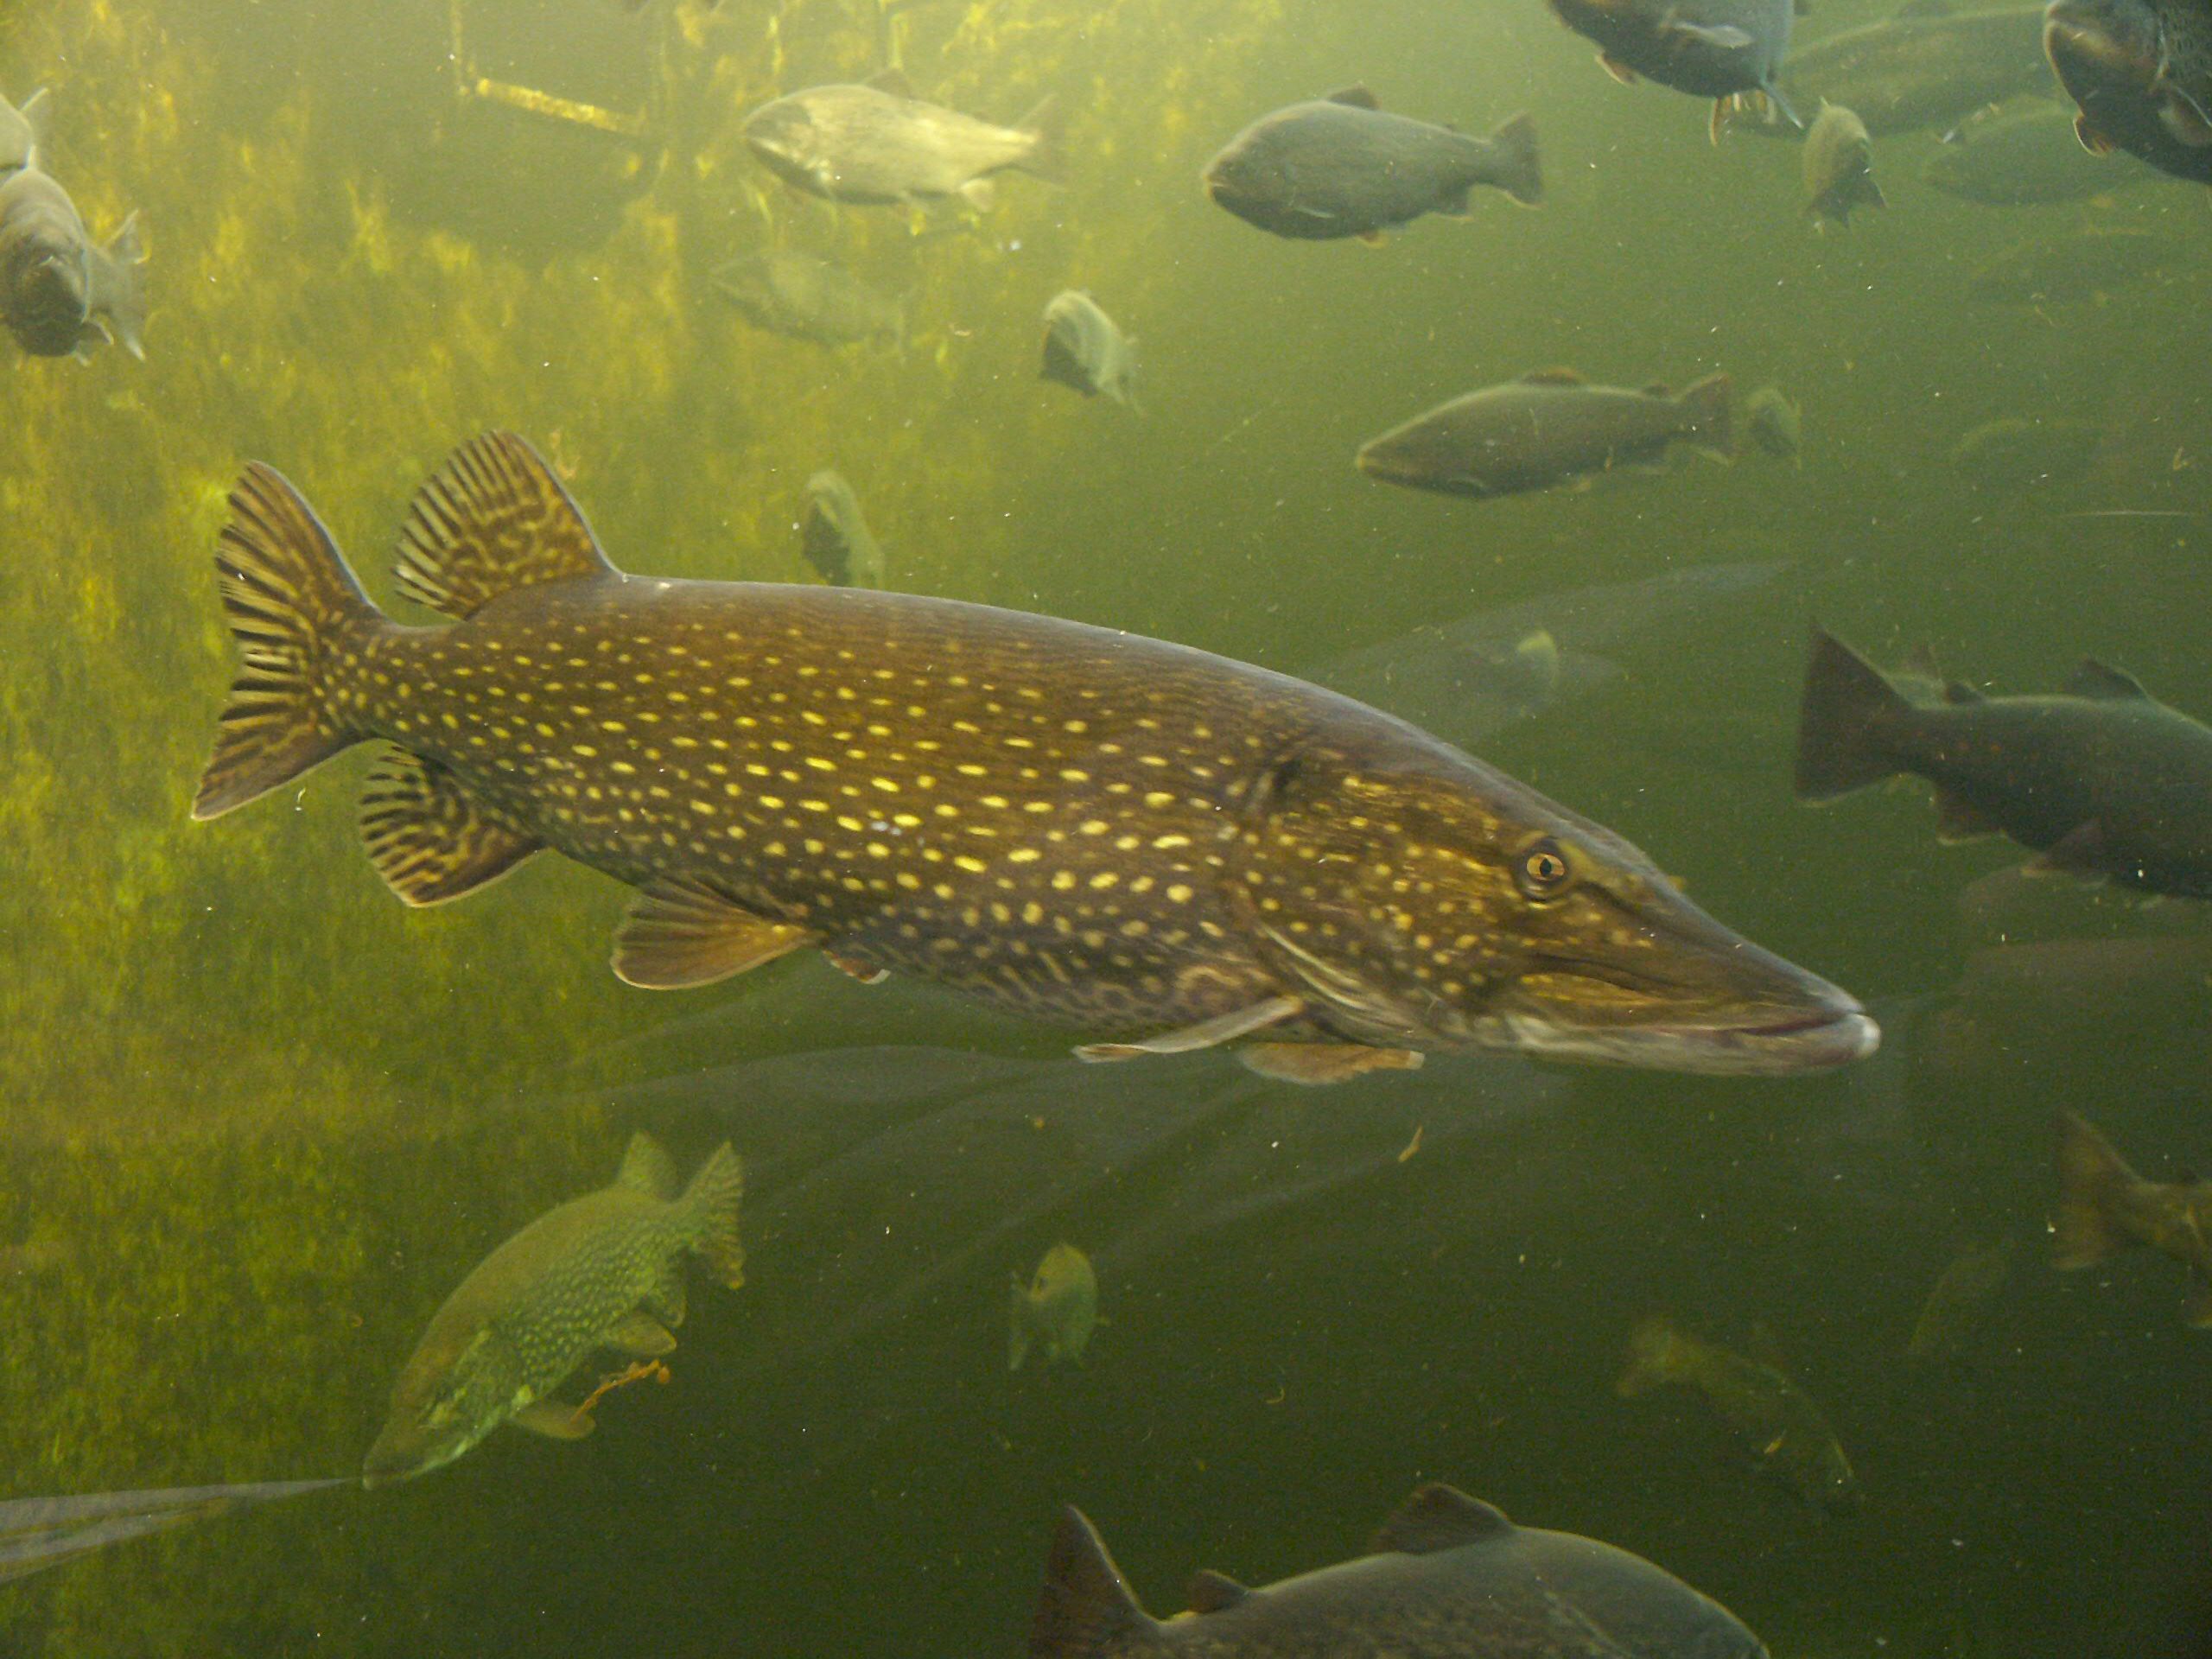 Pike in a public aquarium (Kotka, Finland)